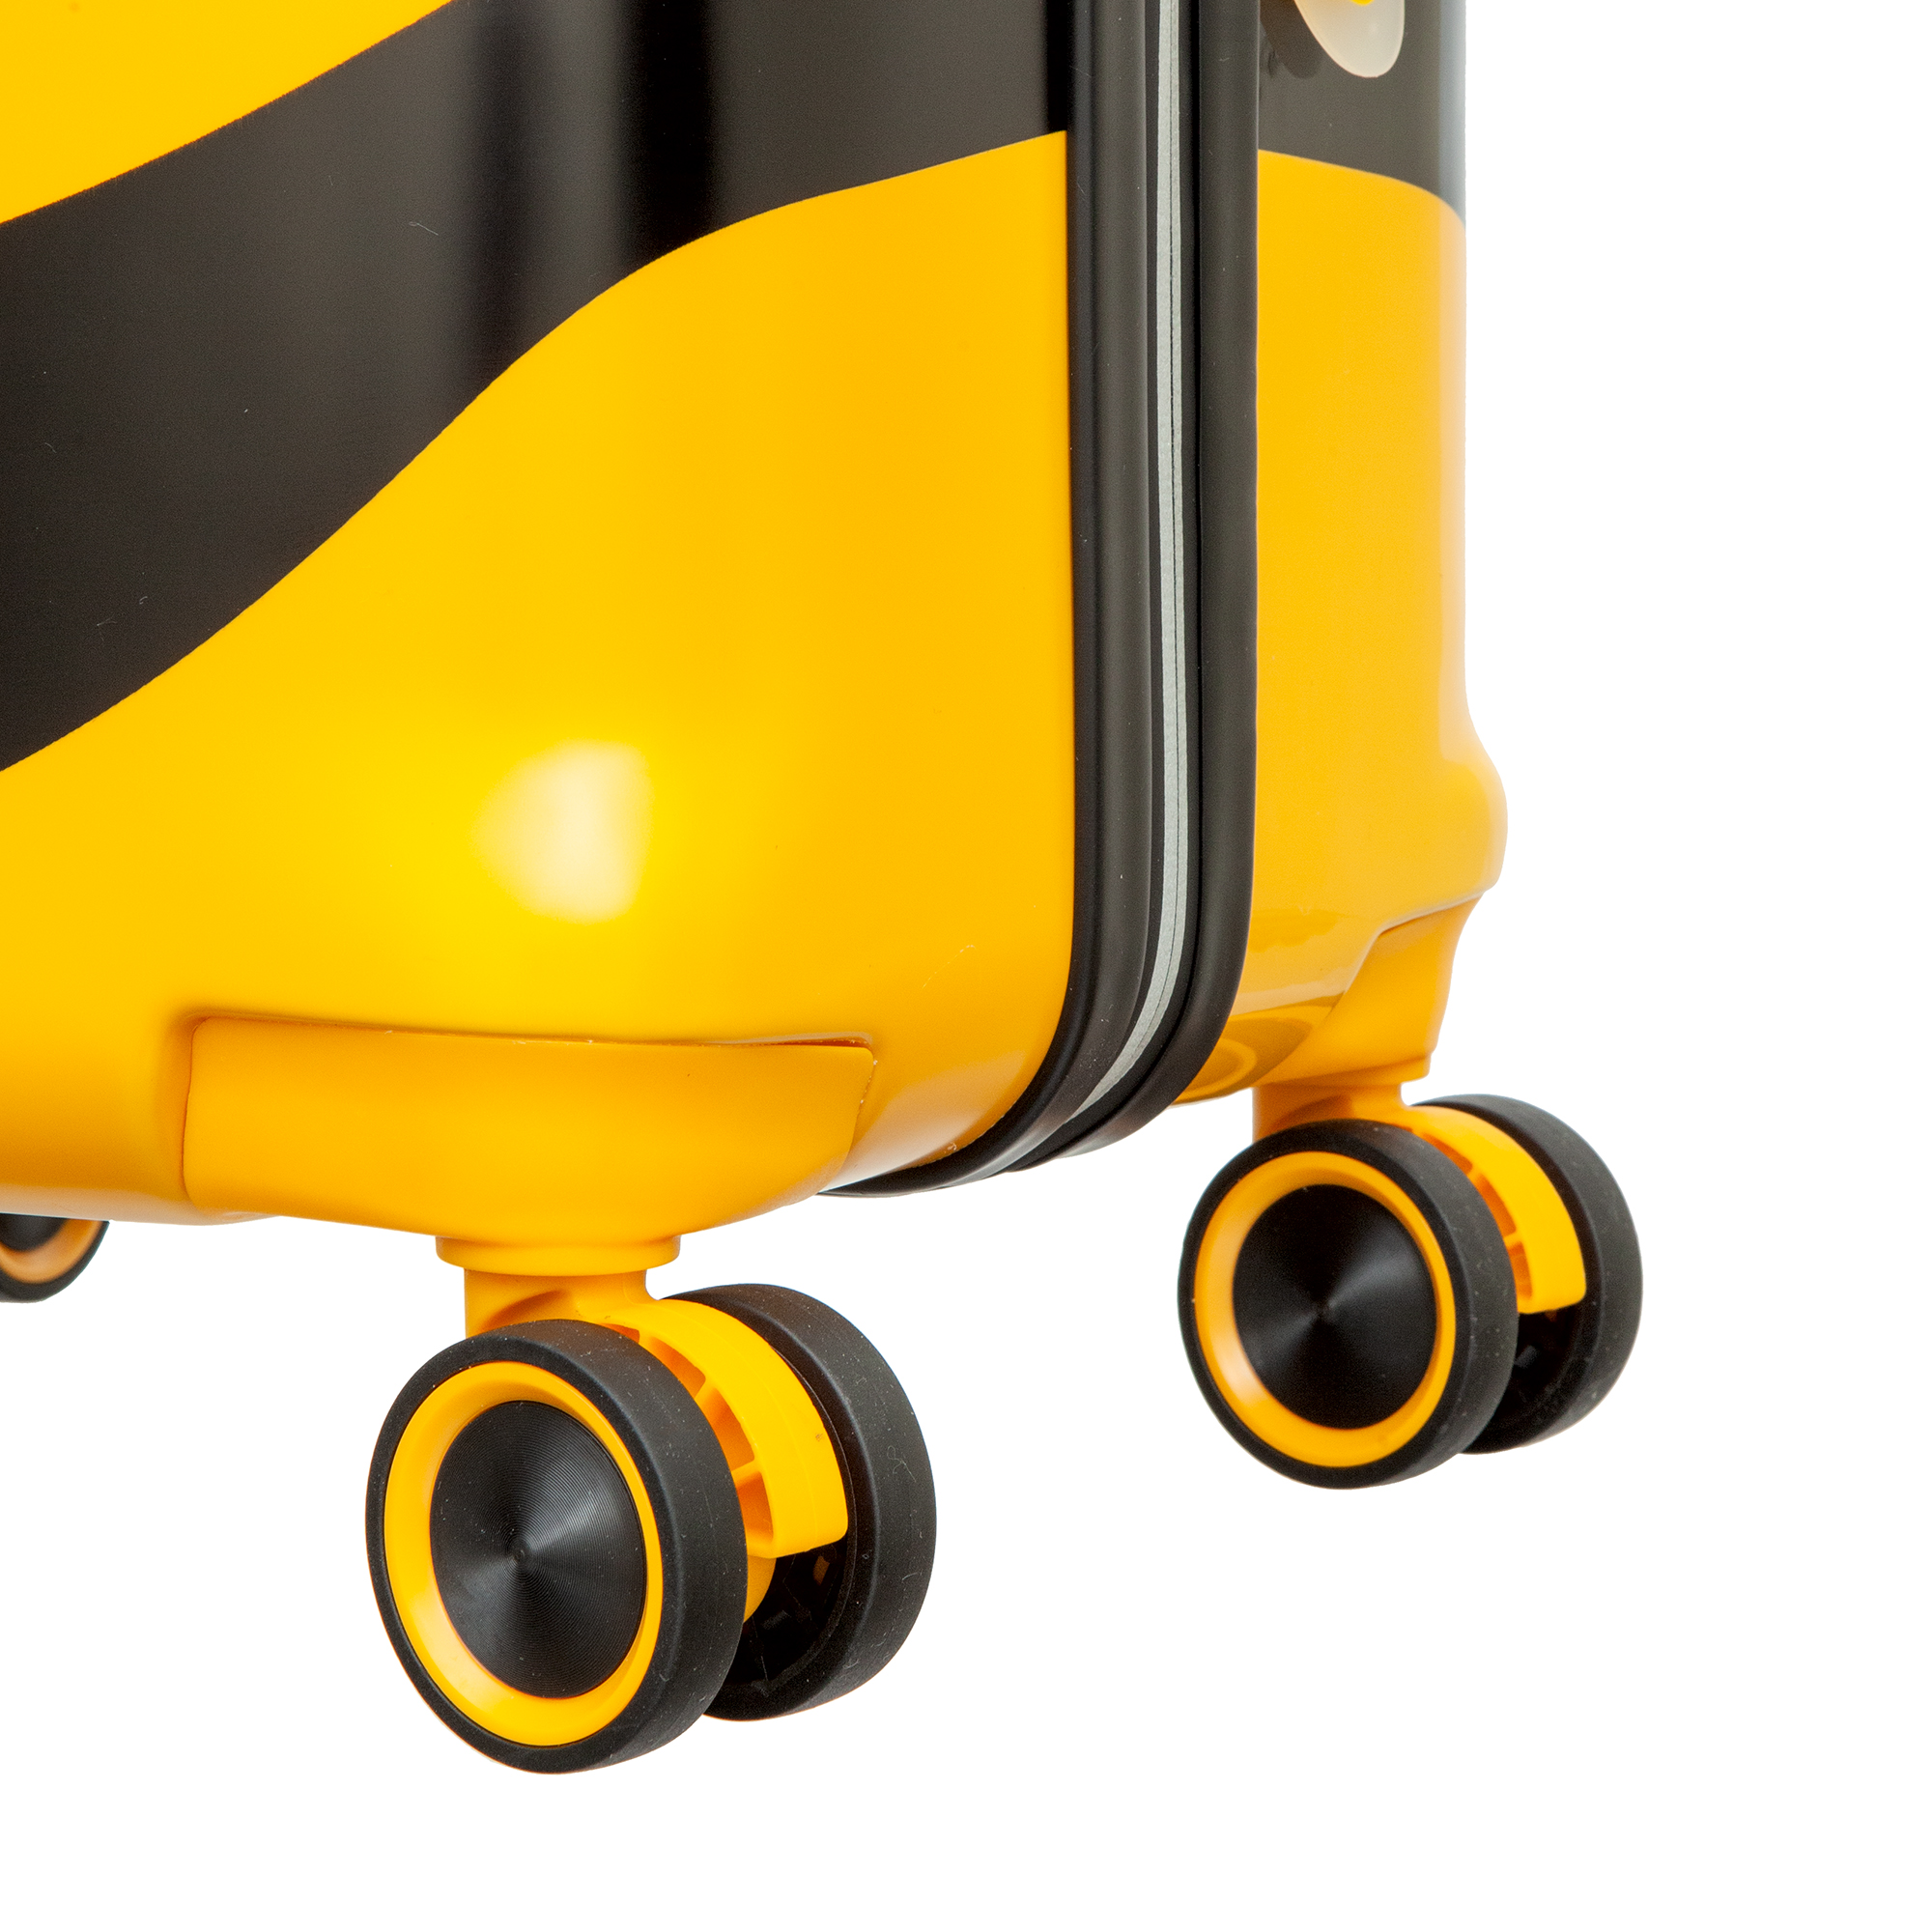 Детский чемодан-тележка
Verage
GM20056W15 yellow Саквояжи